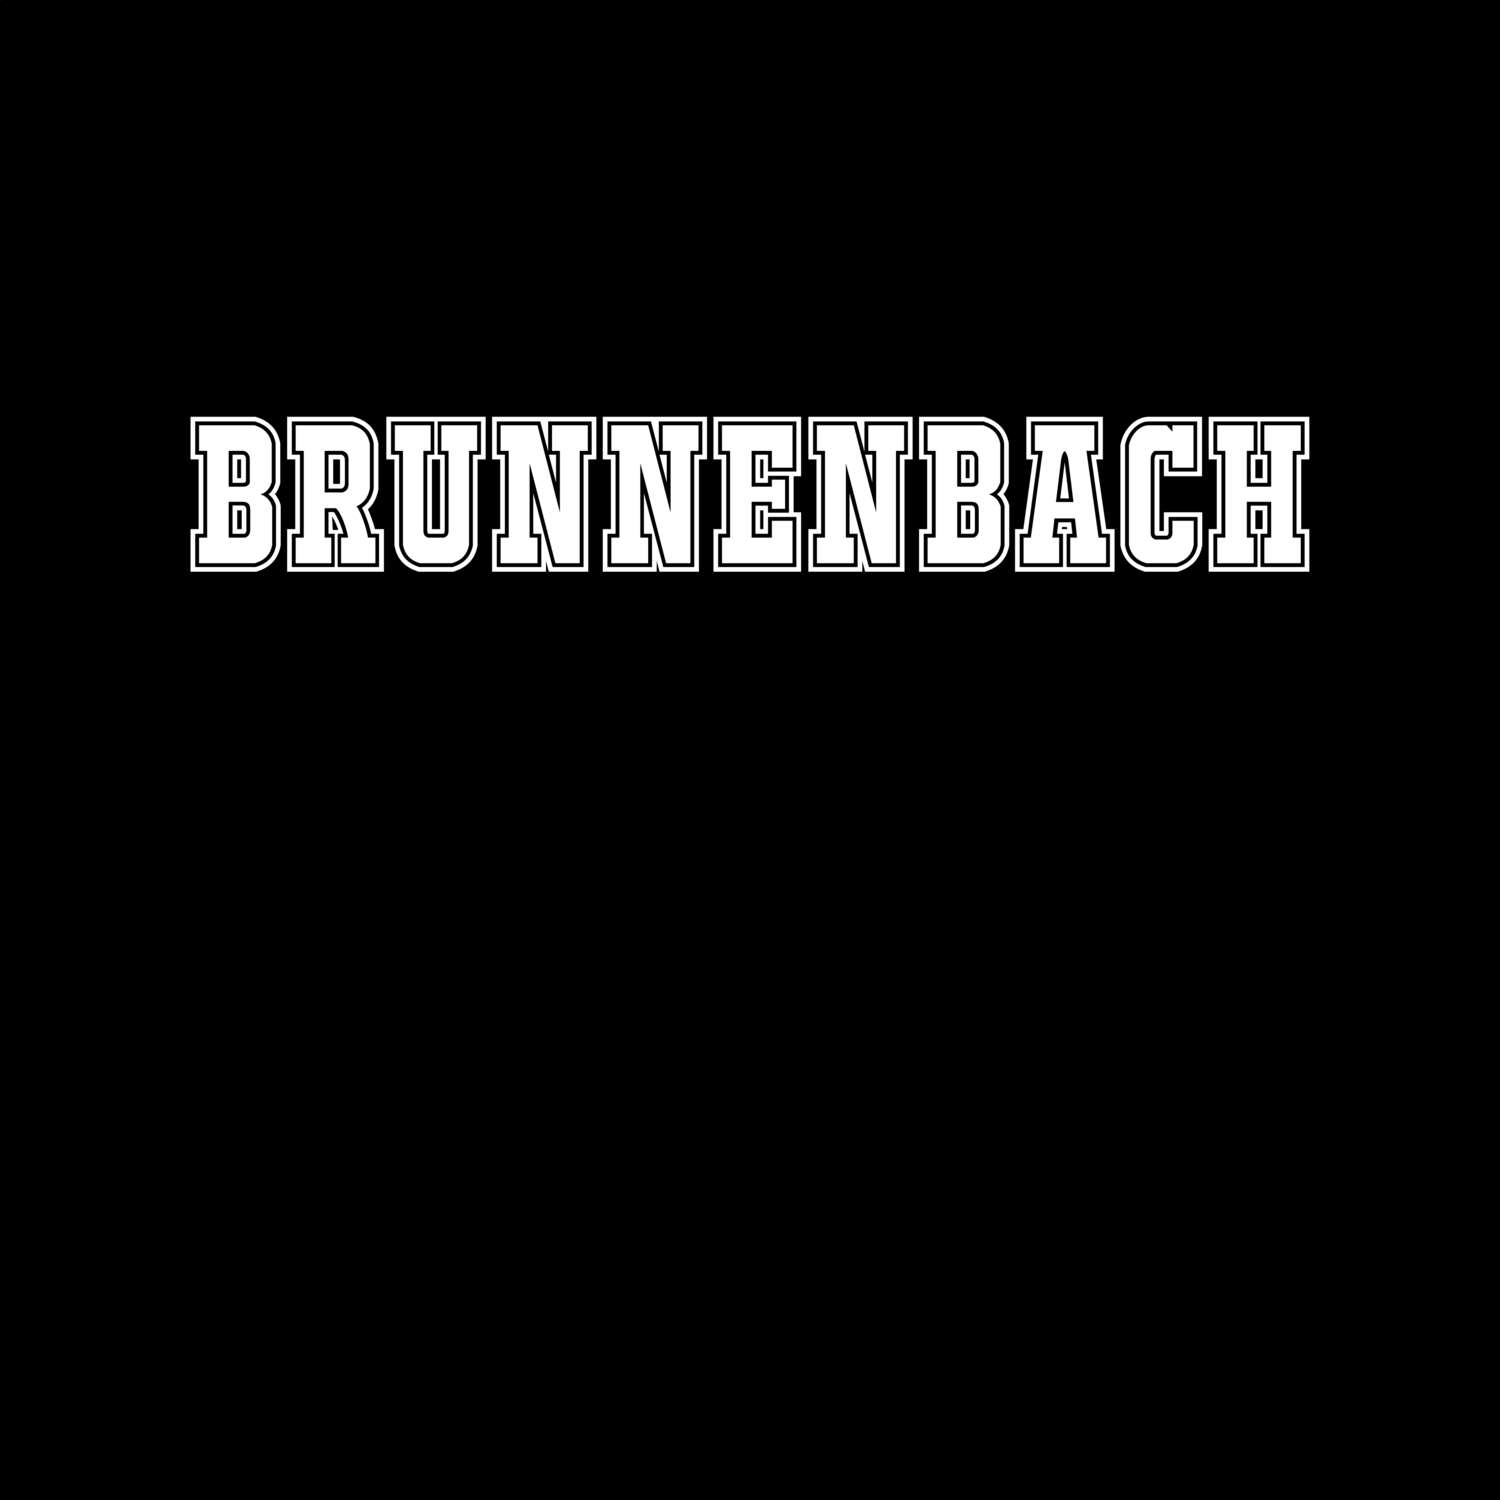 Brunnenbach T-Shirt »Classic«